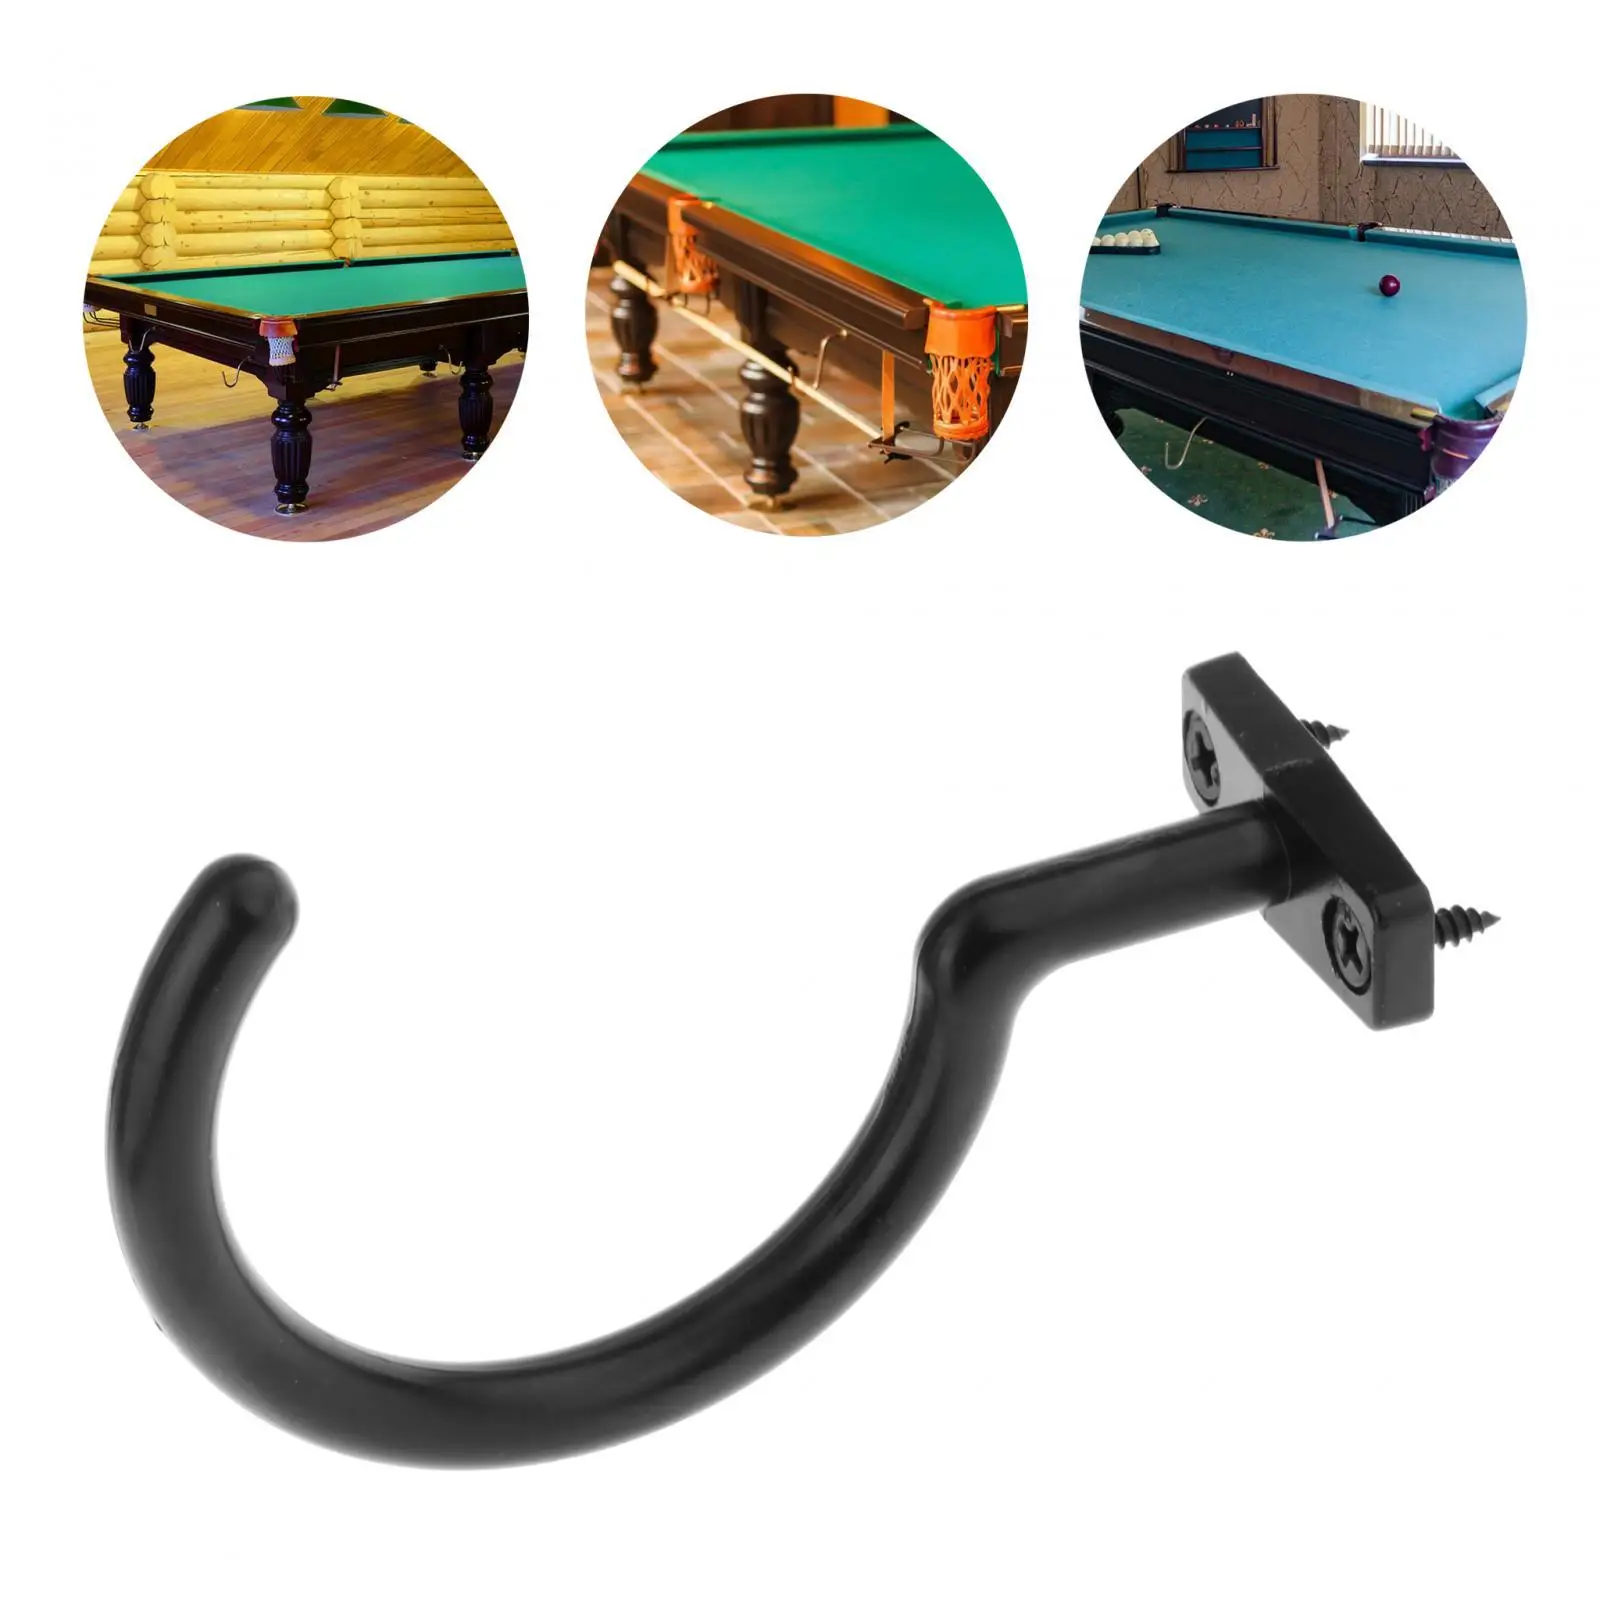 

Крючок для бильярдного кия Snooker, прочная стойка для моста, стойка для бассейна, для бильярдного стола, аксессуары для игр в помещении